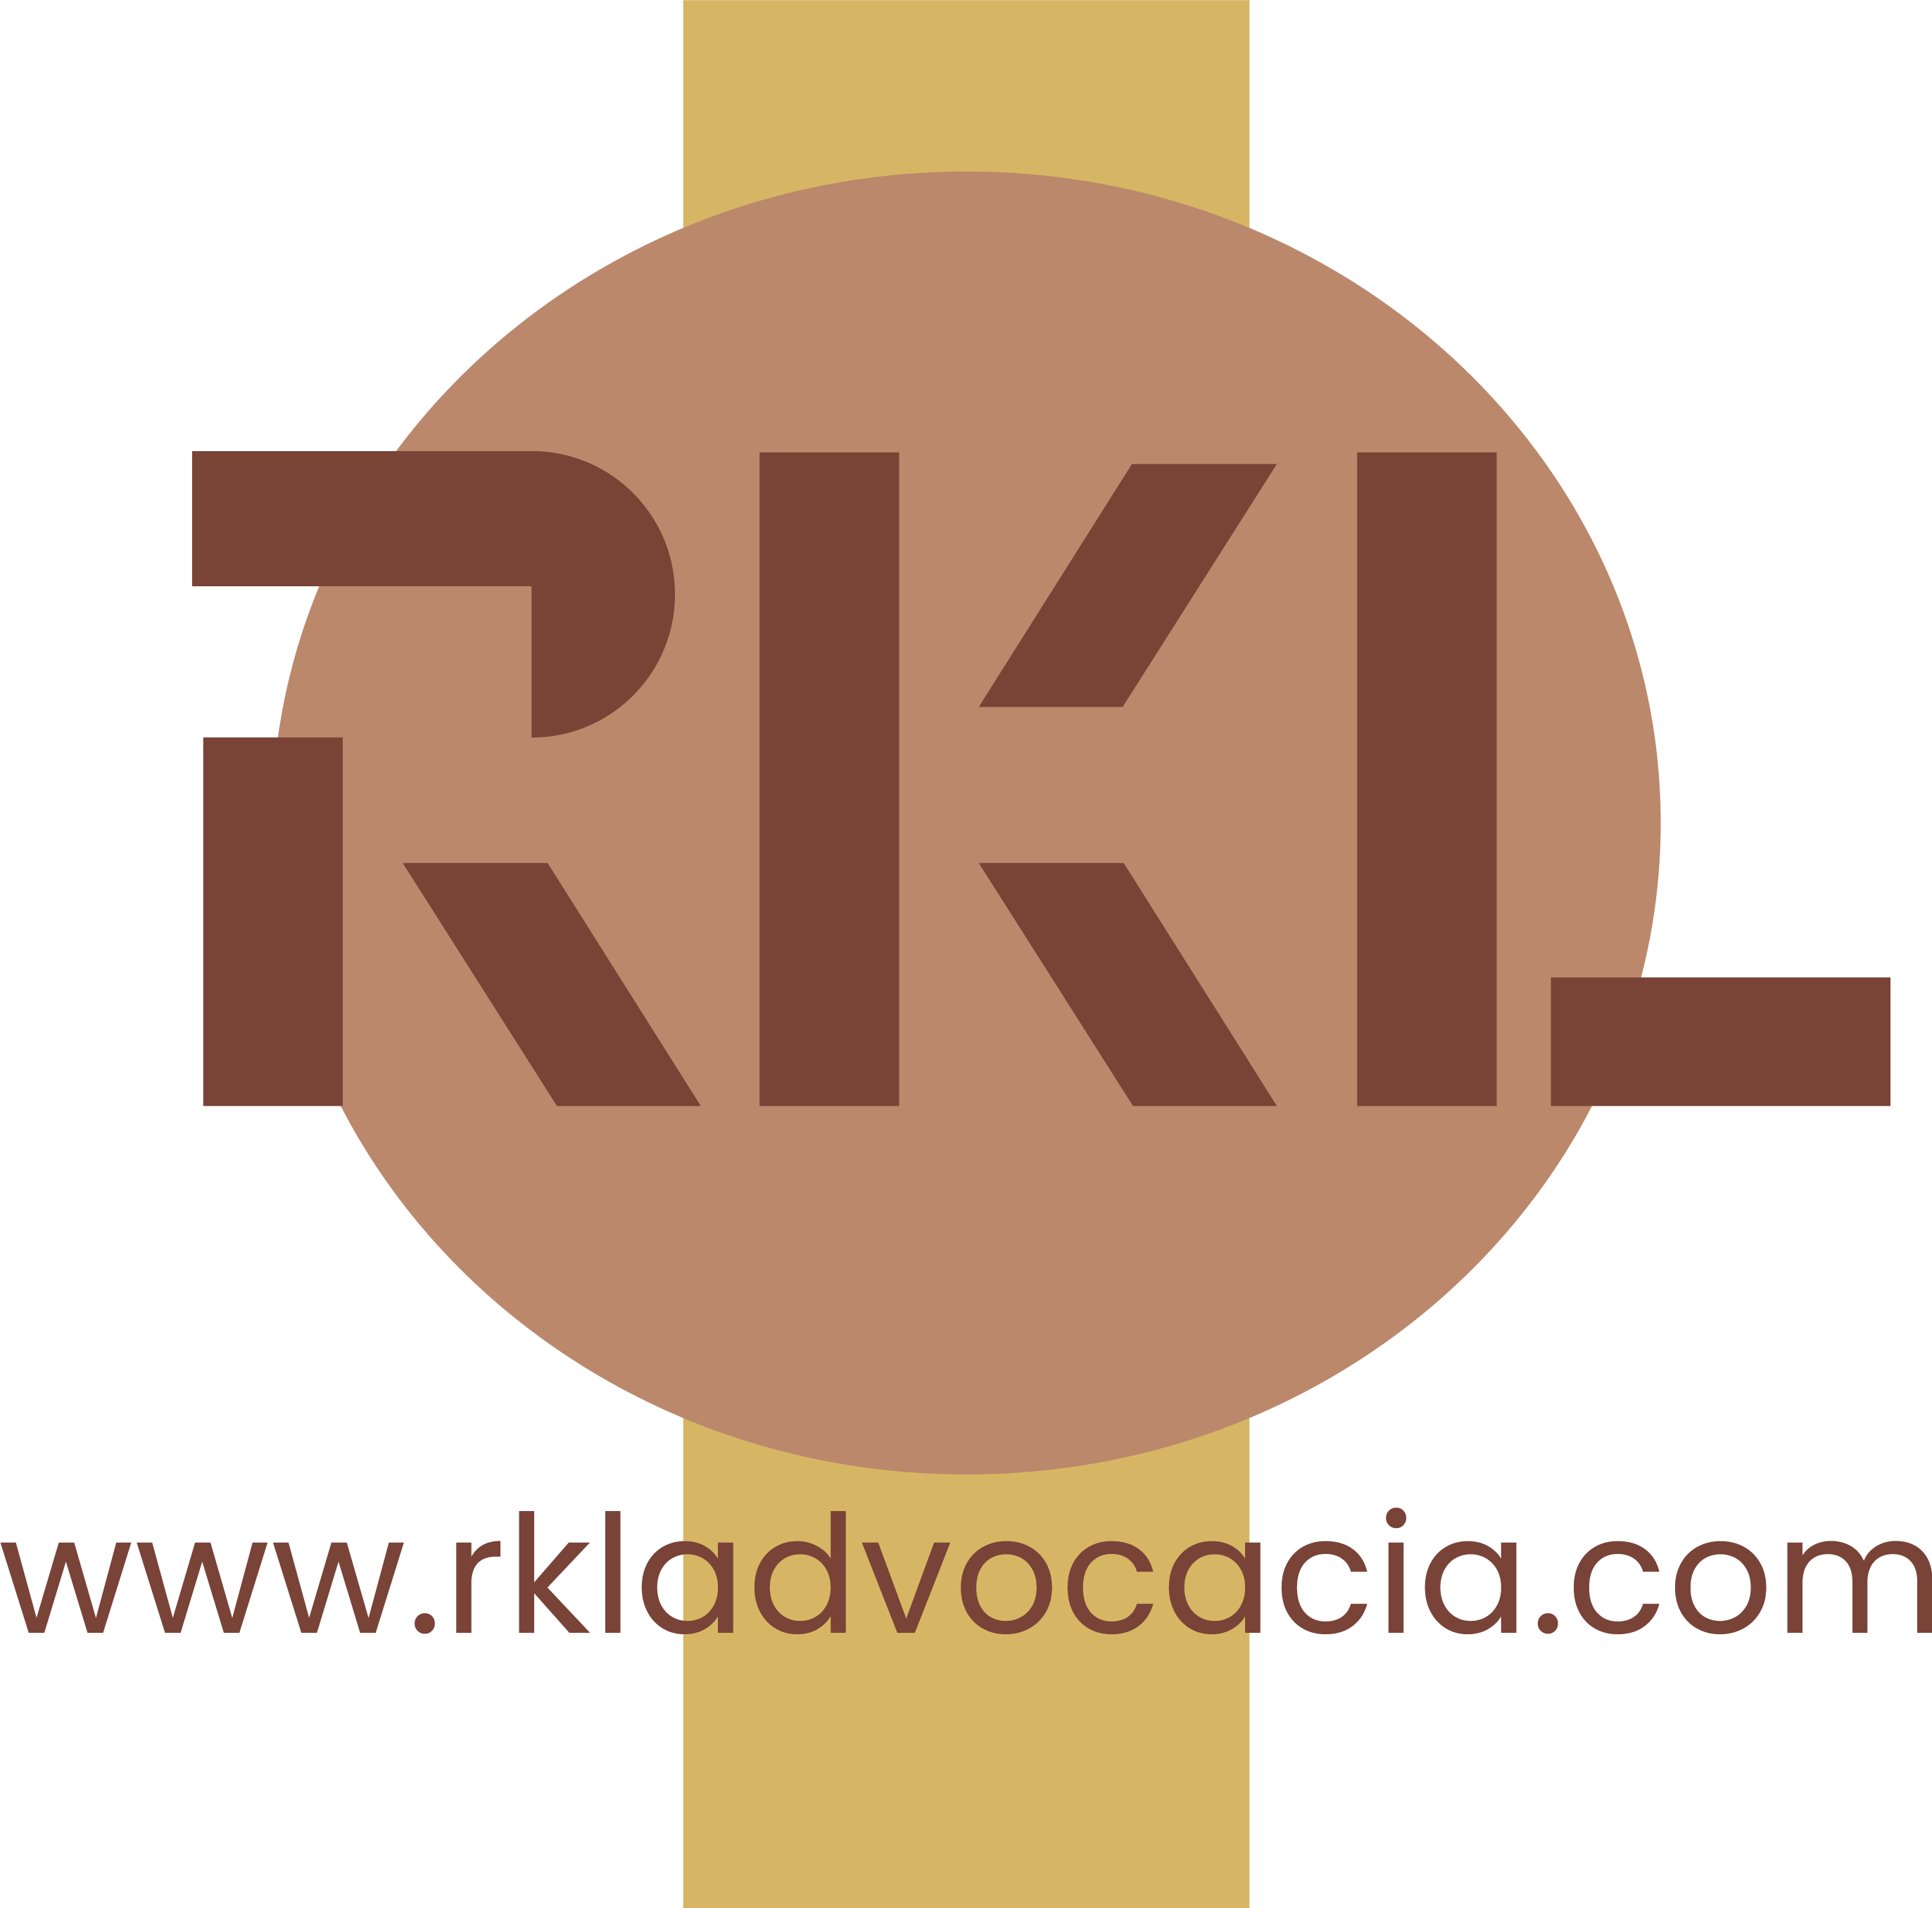 RKL Escritório de Advocacia